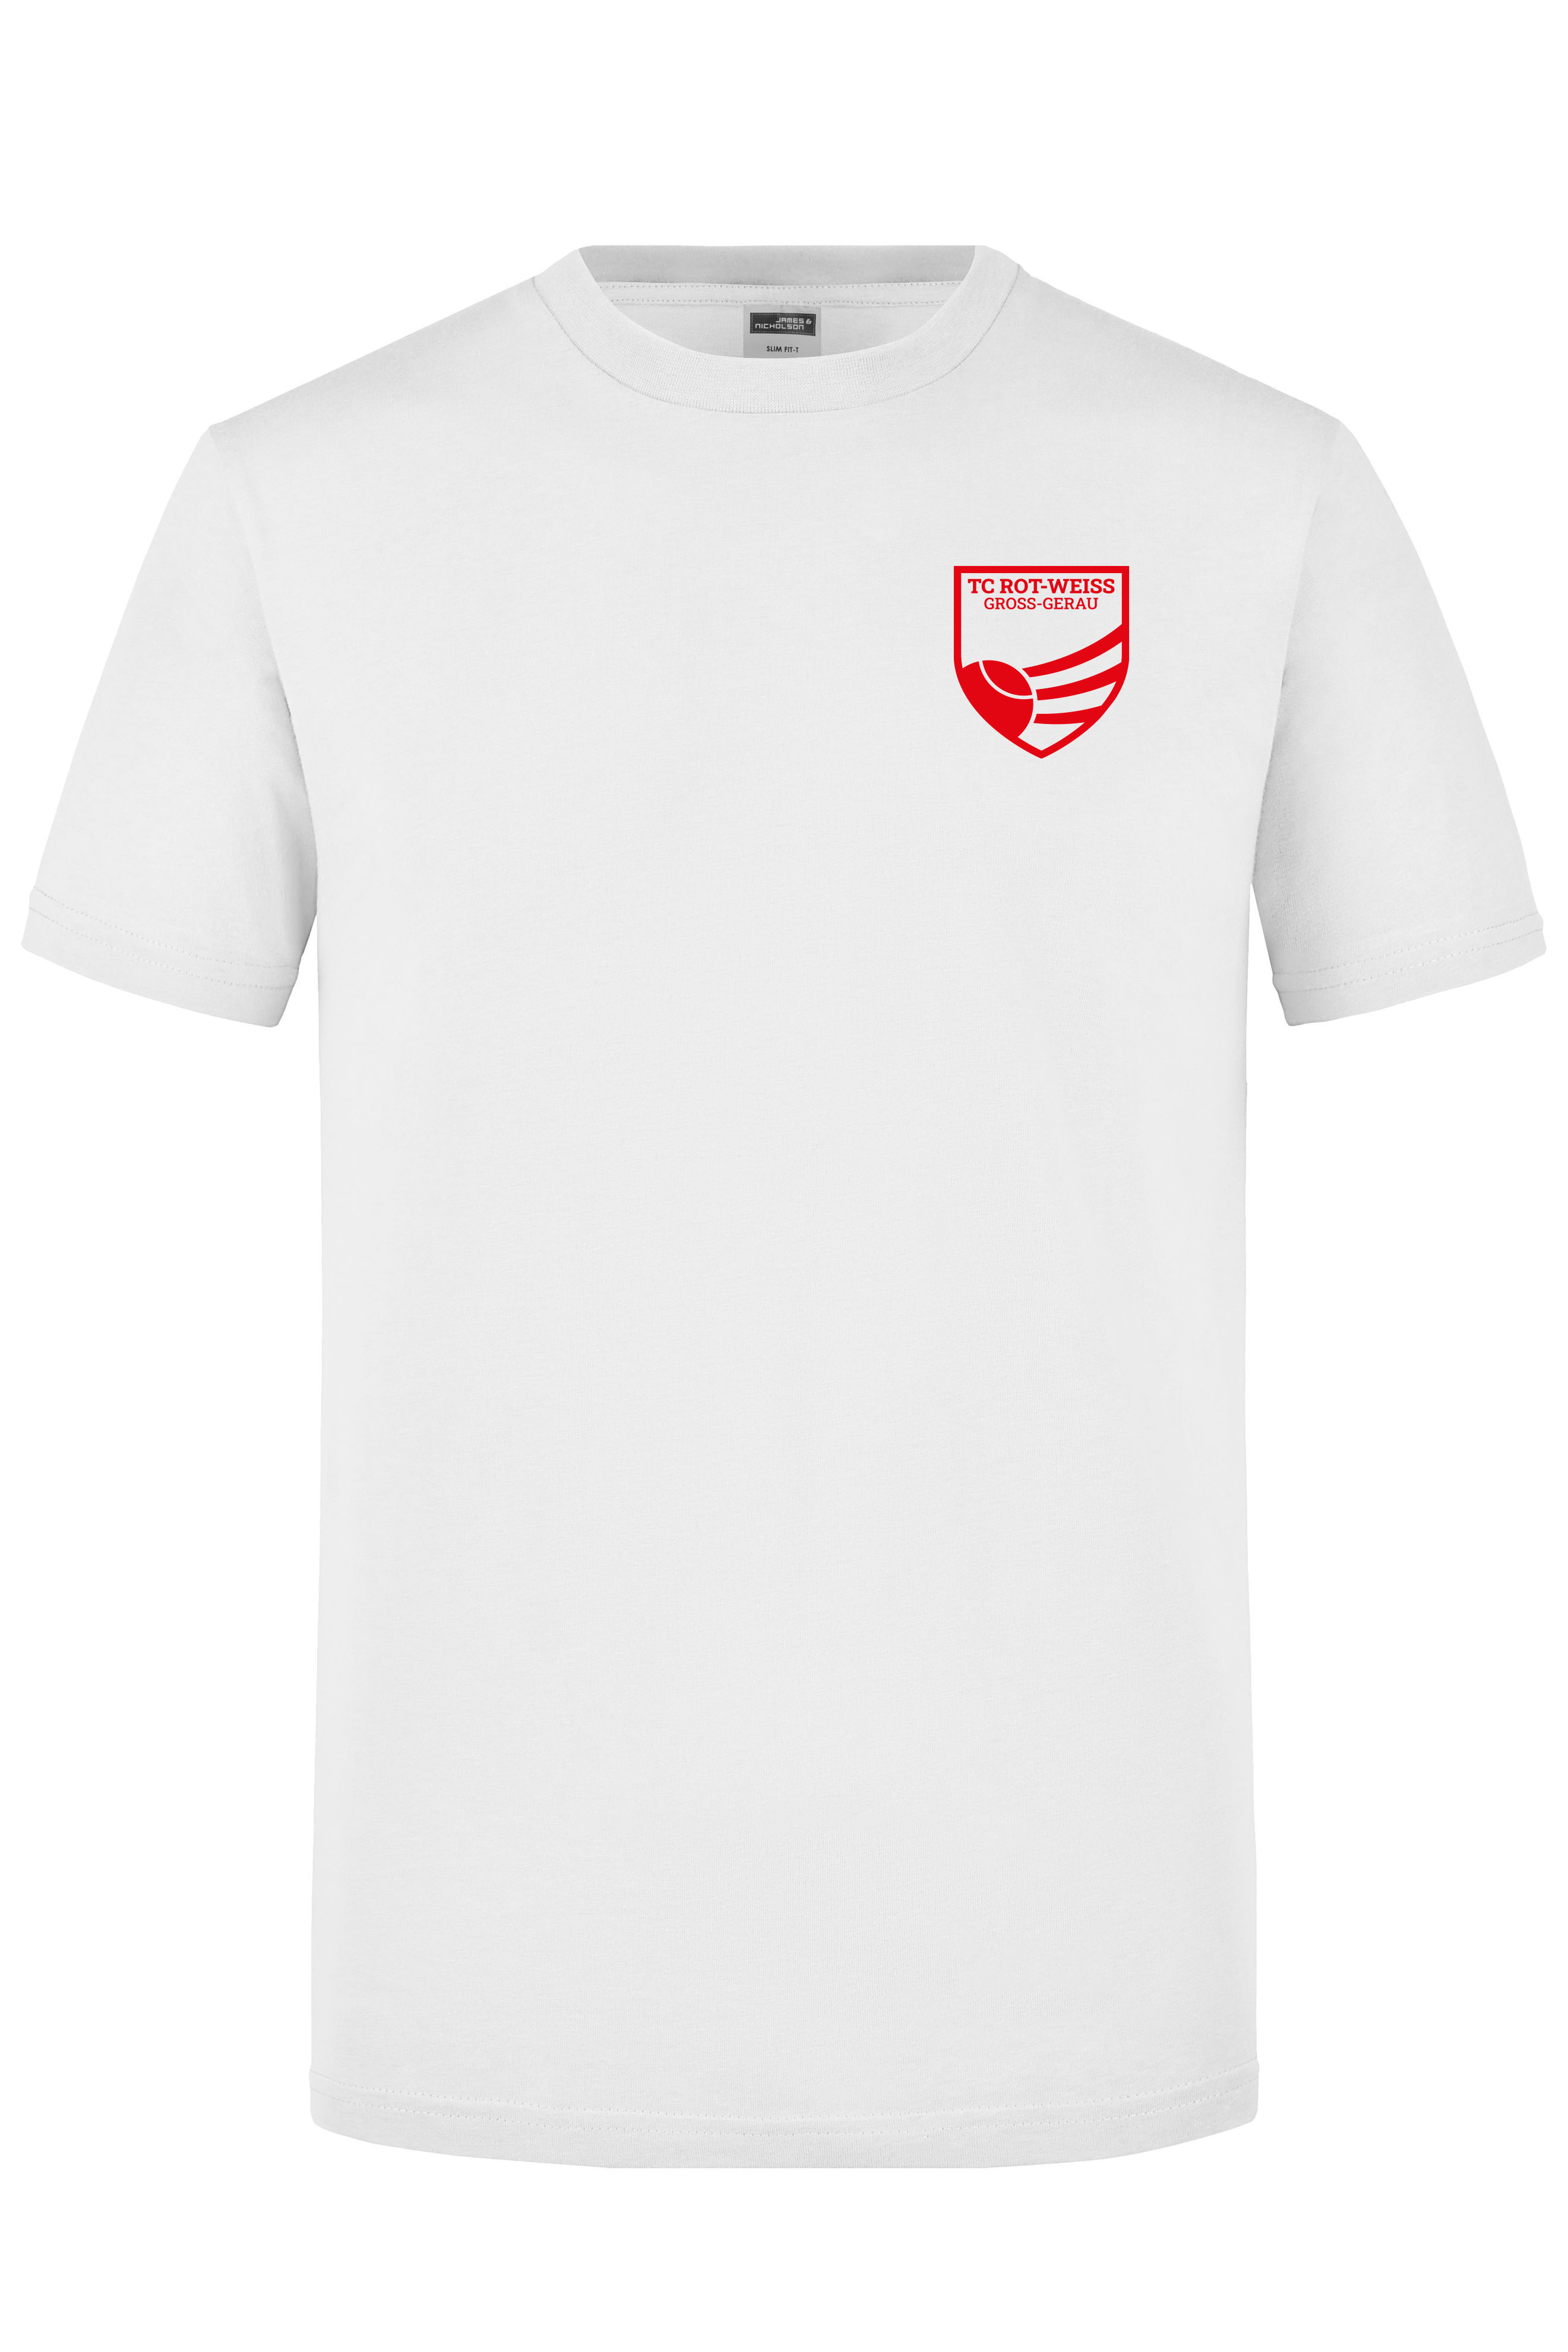 TC Rot-Weiss T-Shirt weiss